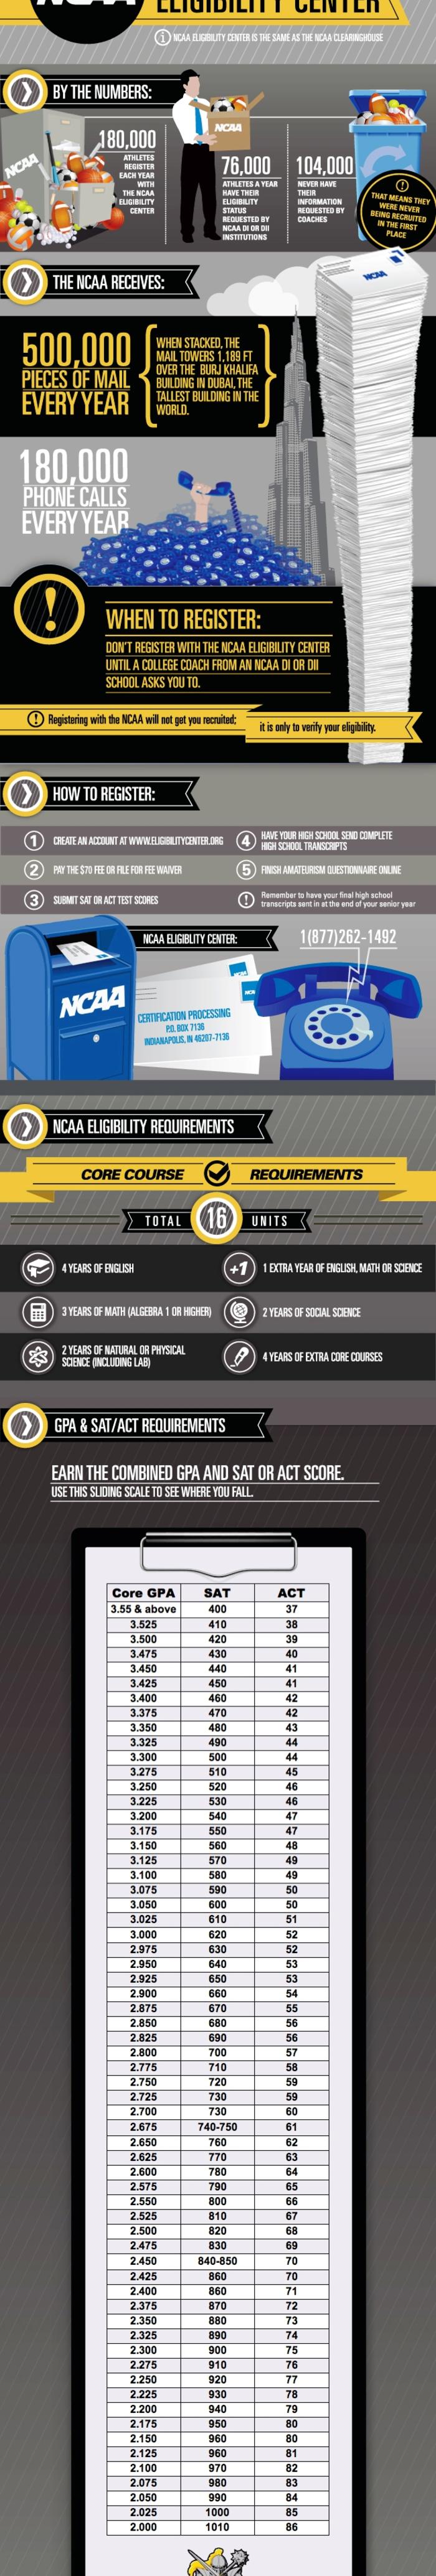 NCAA Elegibility Infographic 